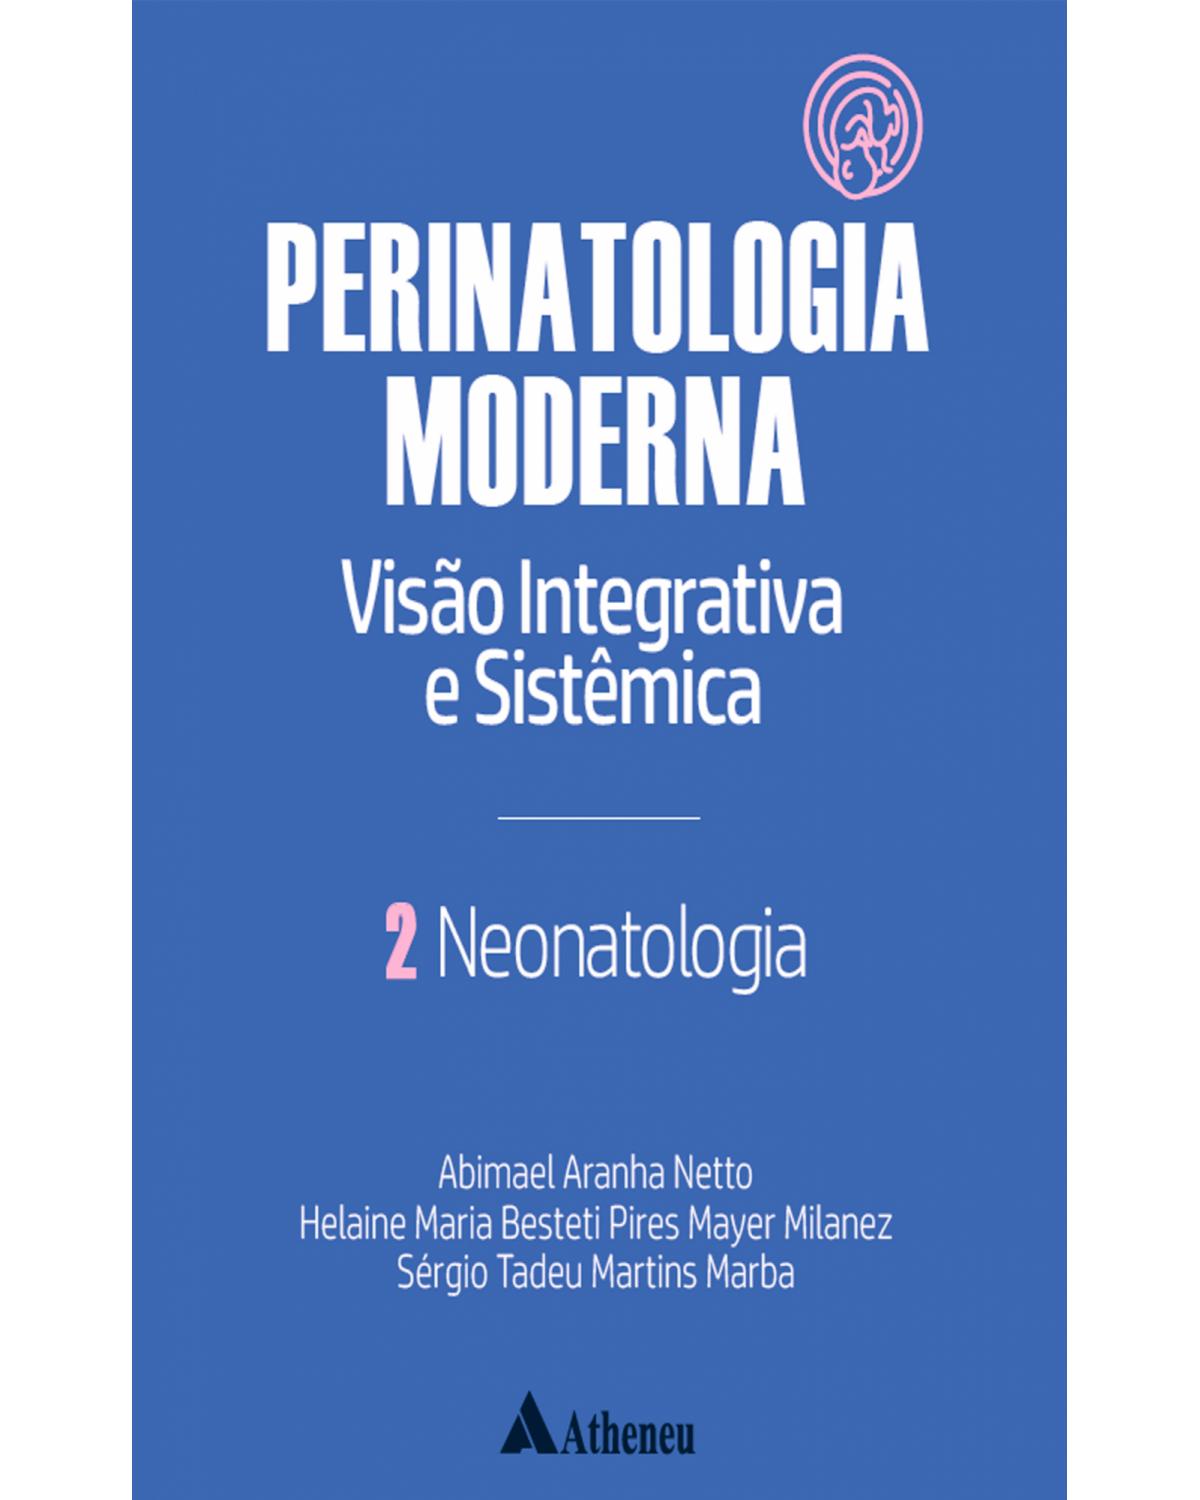 Neonatologia - Perinatologia moderna: visão integrativa e sistêmica - vol. 2 - Volume 2:  - 1ª Edição | 2022